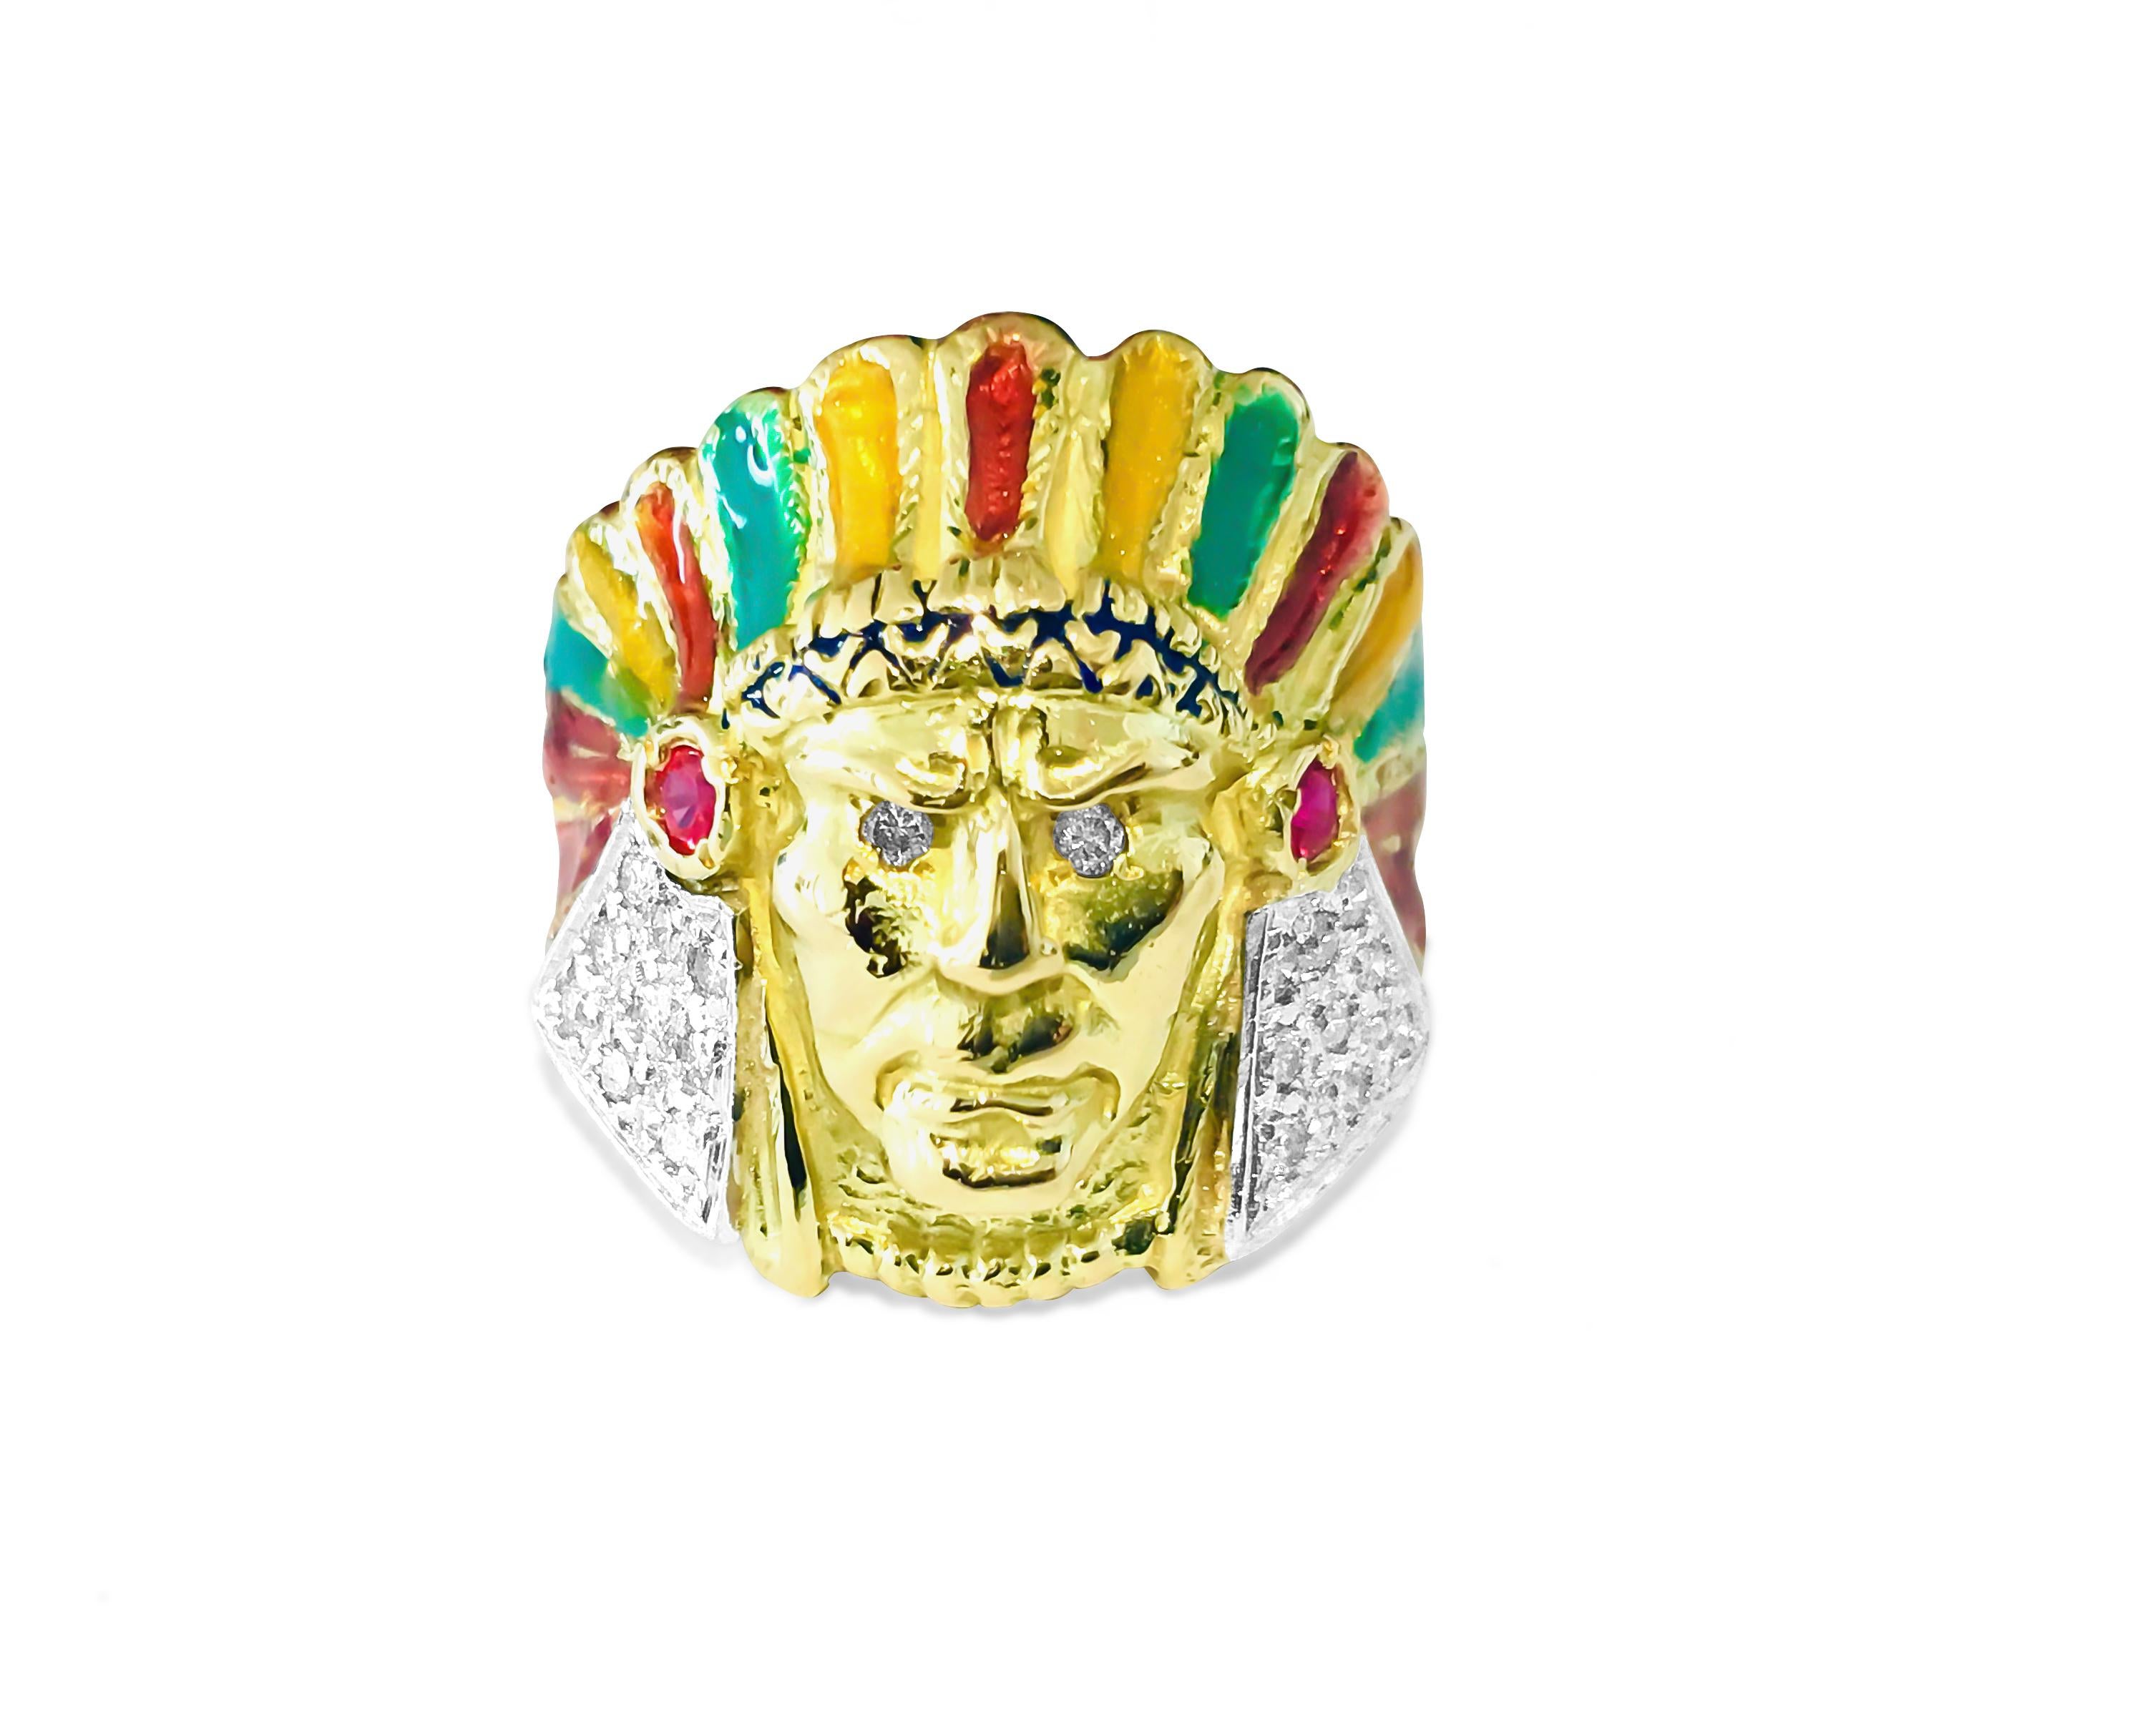 Artisan American Indian 0.85 Carat Diamond Ruby Ring 18 Karat Yellow Gold